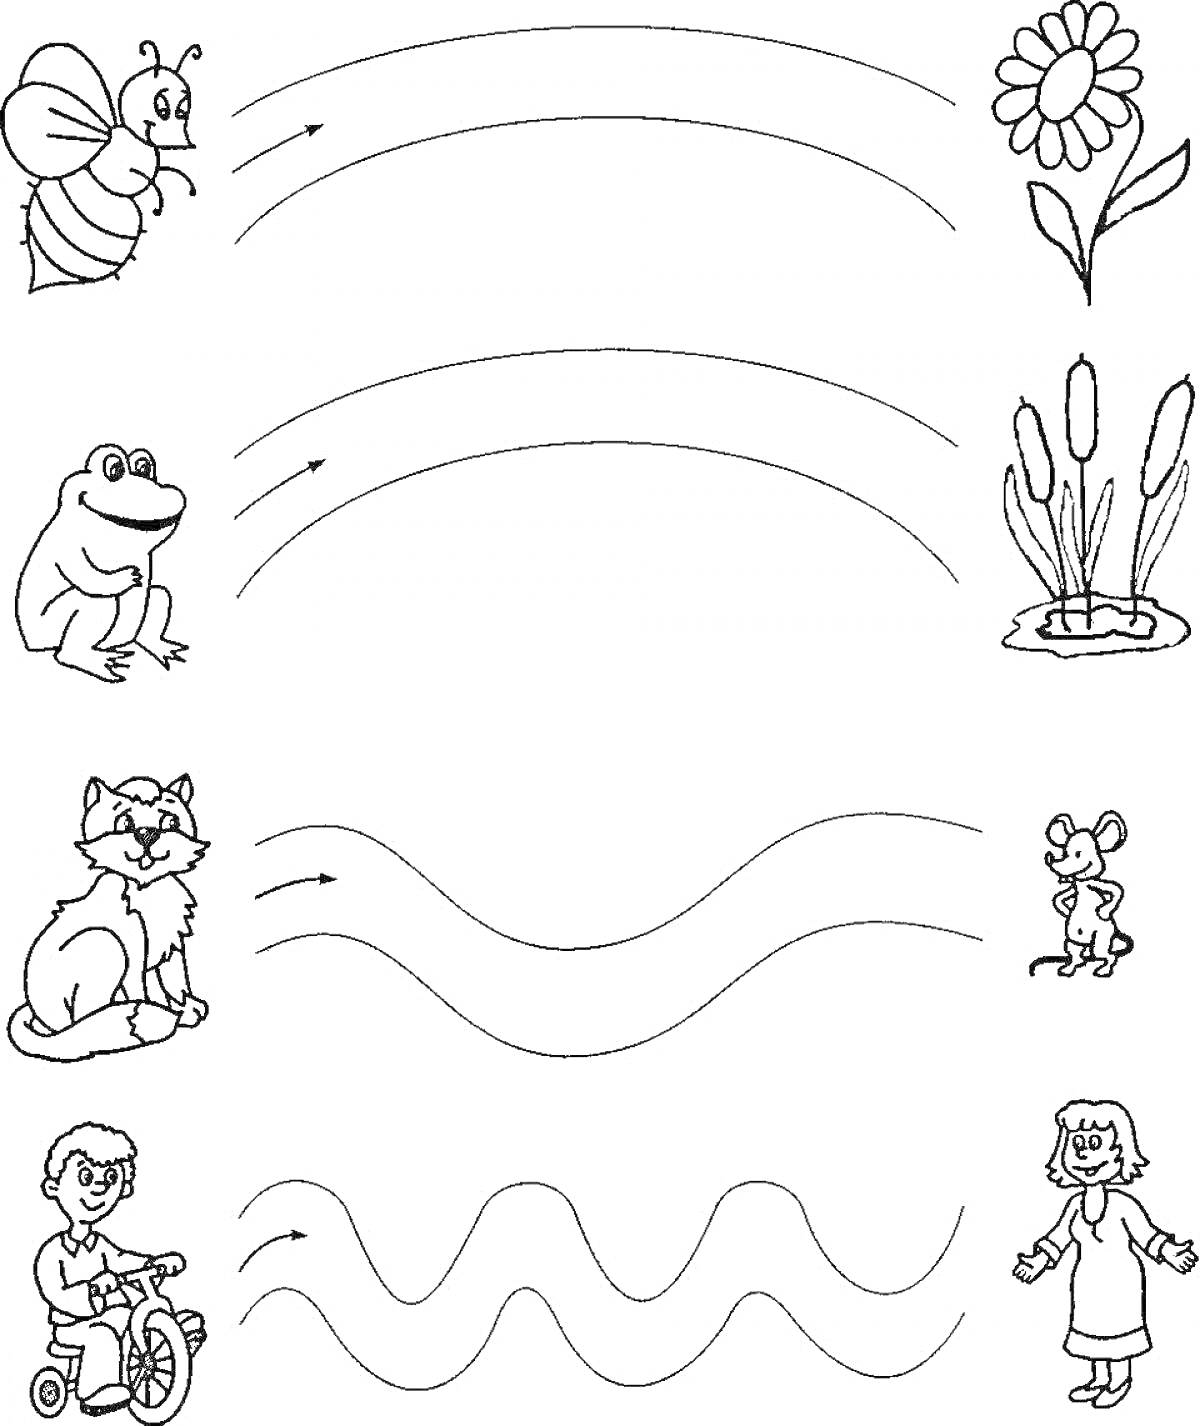 Раскраска тренировка рисования линий, пчела, цветок, лягушка, речные растения, кот, мышь, ребёнок на велосипеде, стоящий человек